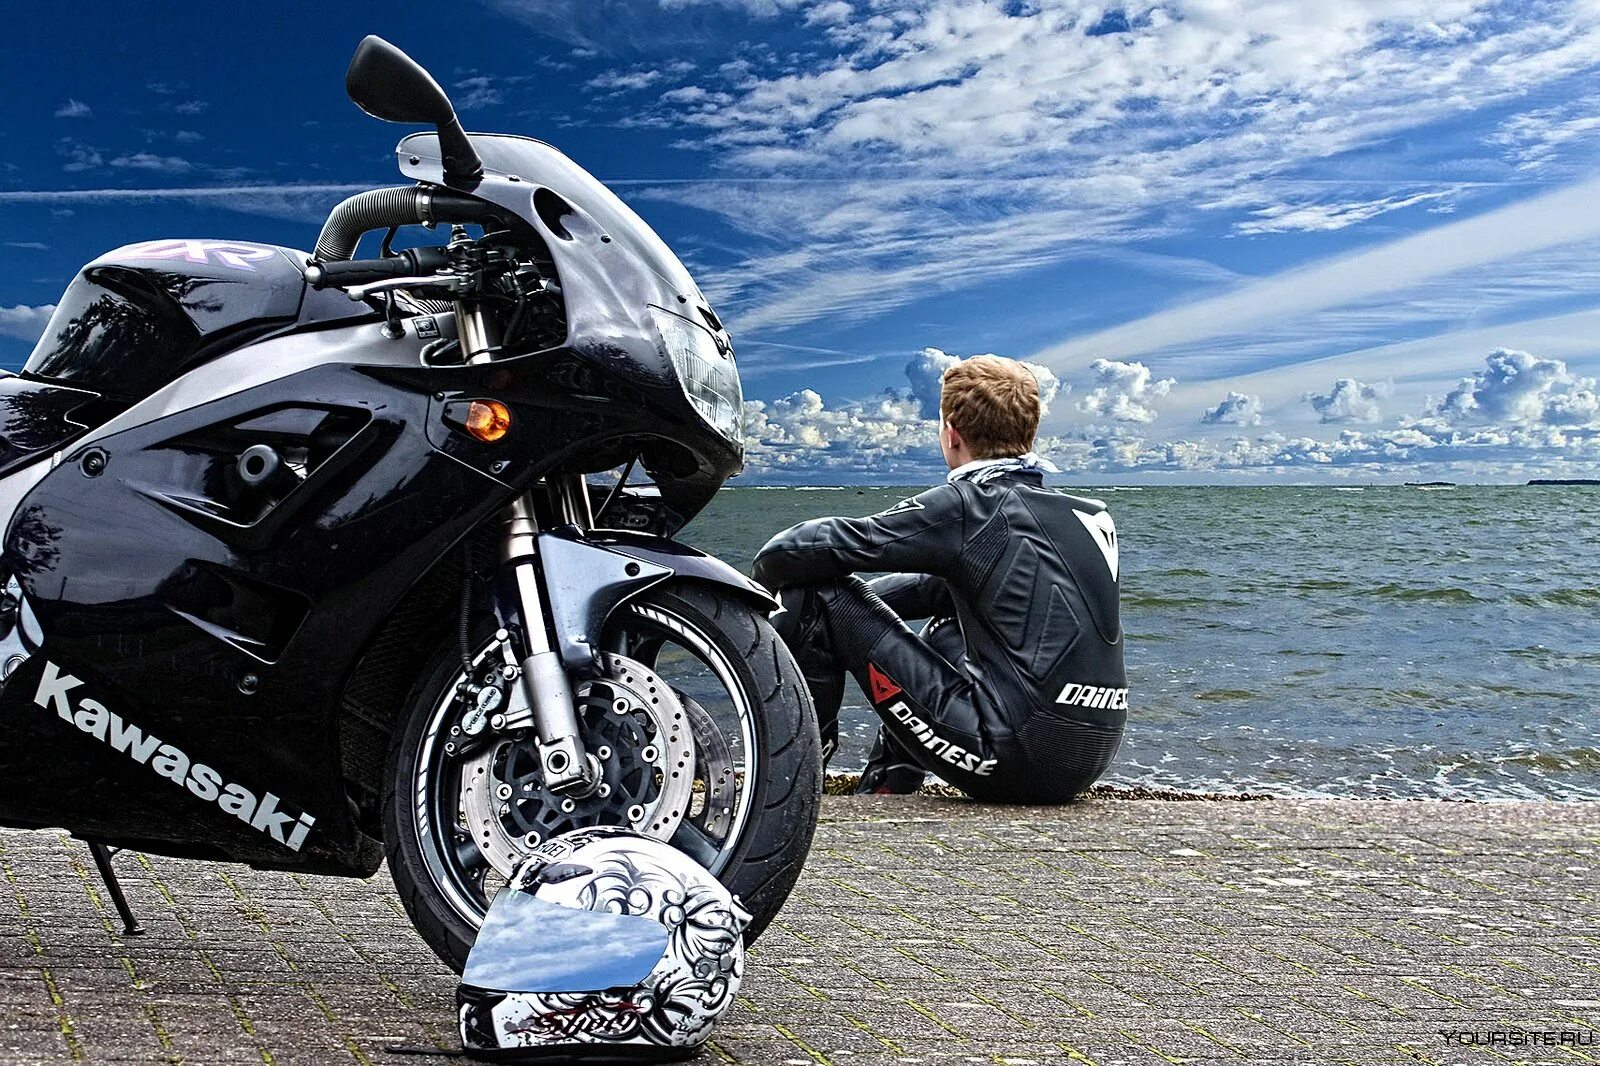 Мотоцикл включаться. Мотоцикл море. Мотоцикл для путешествий. Байк мотоцикл. Мотоцикл на фоне моря.